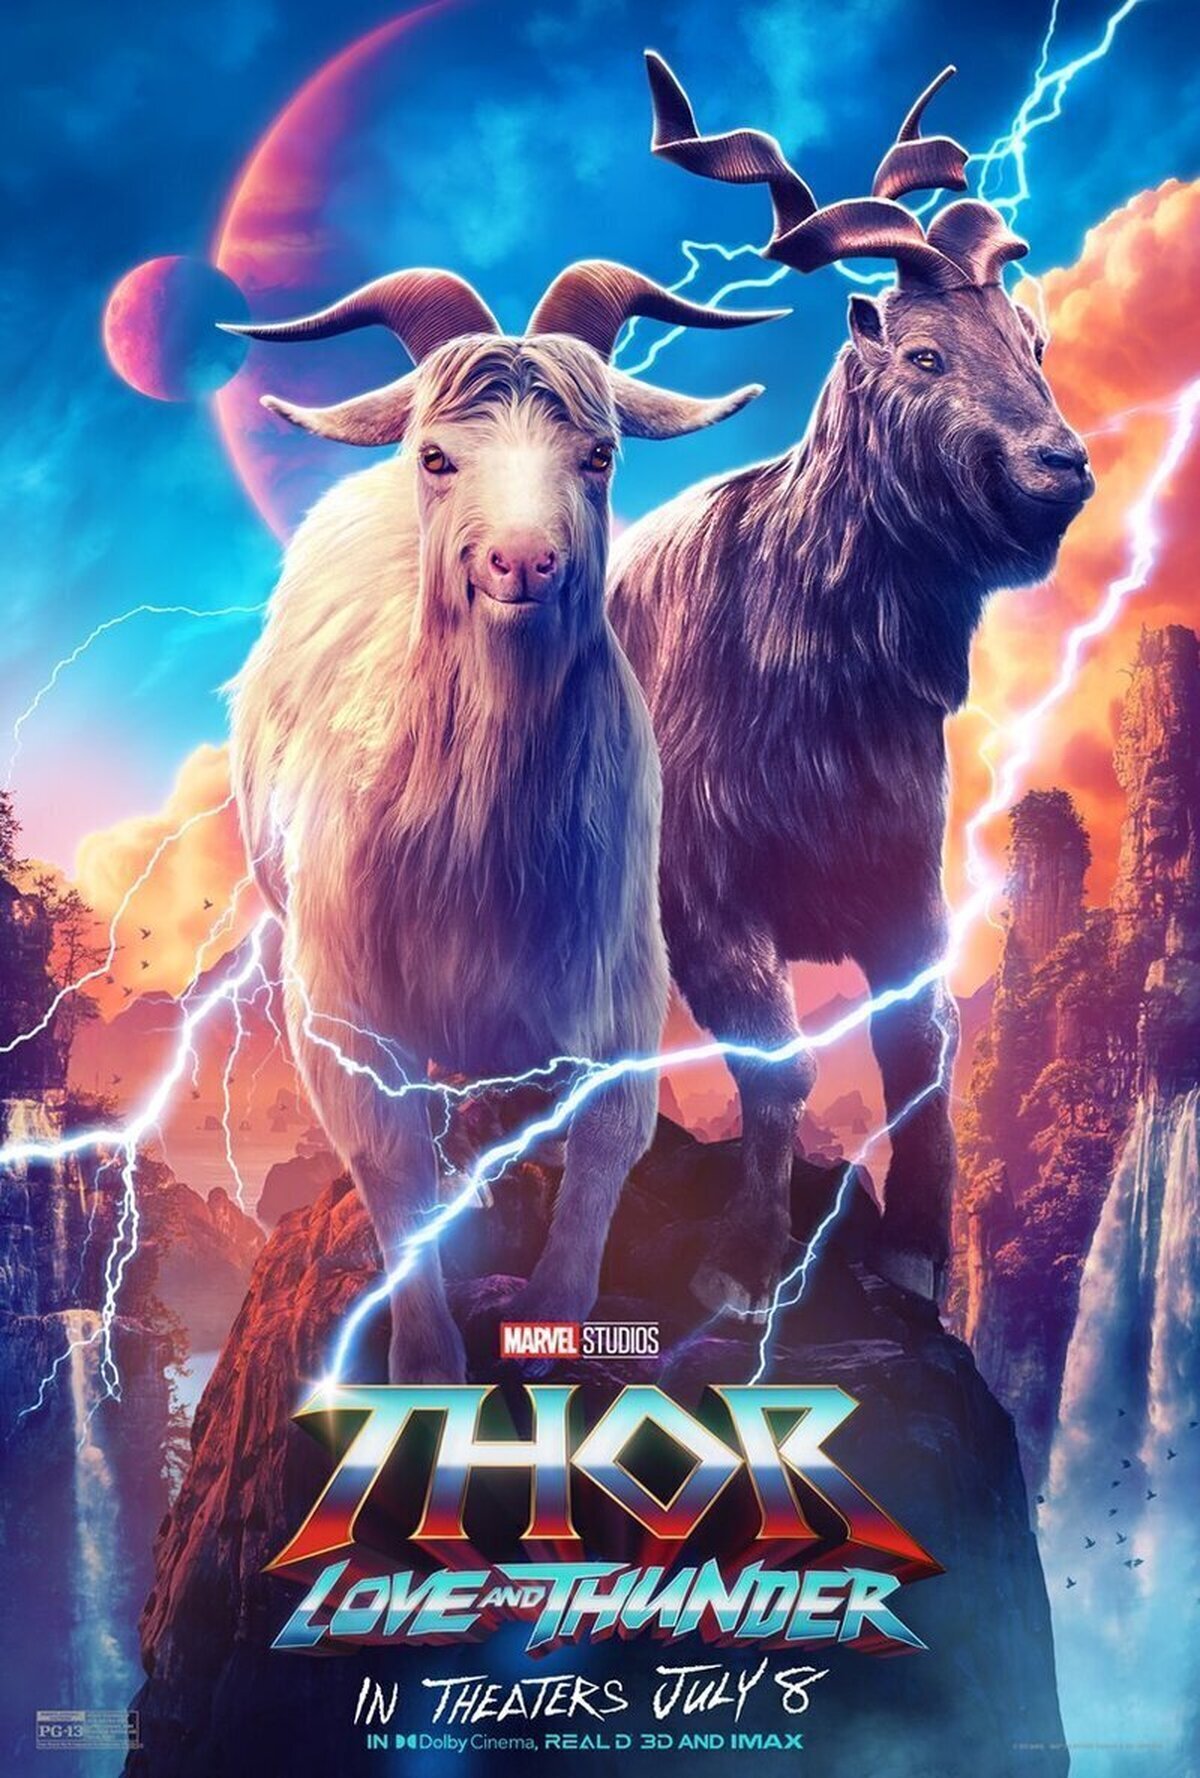 ¡También hay póster individual de las cabras de Thor! JAJAJAJA #ThorLoveAndThunder  